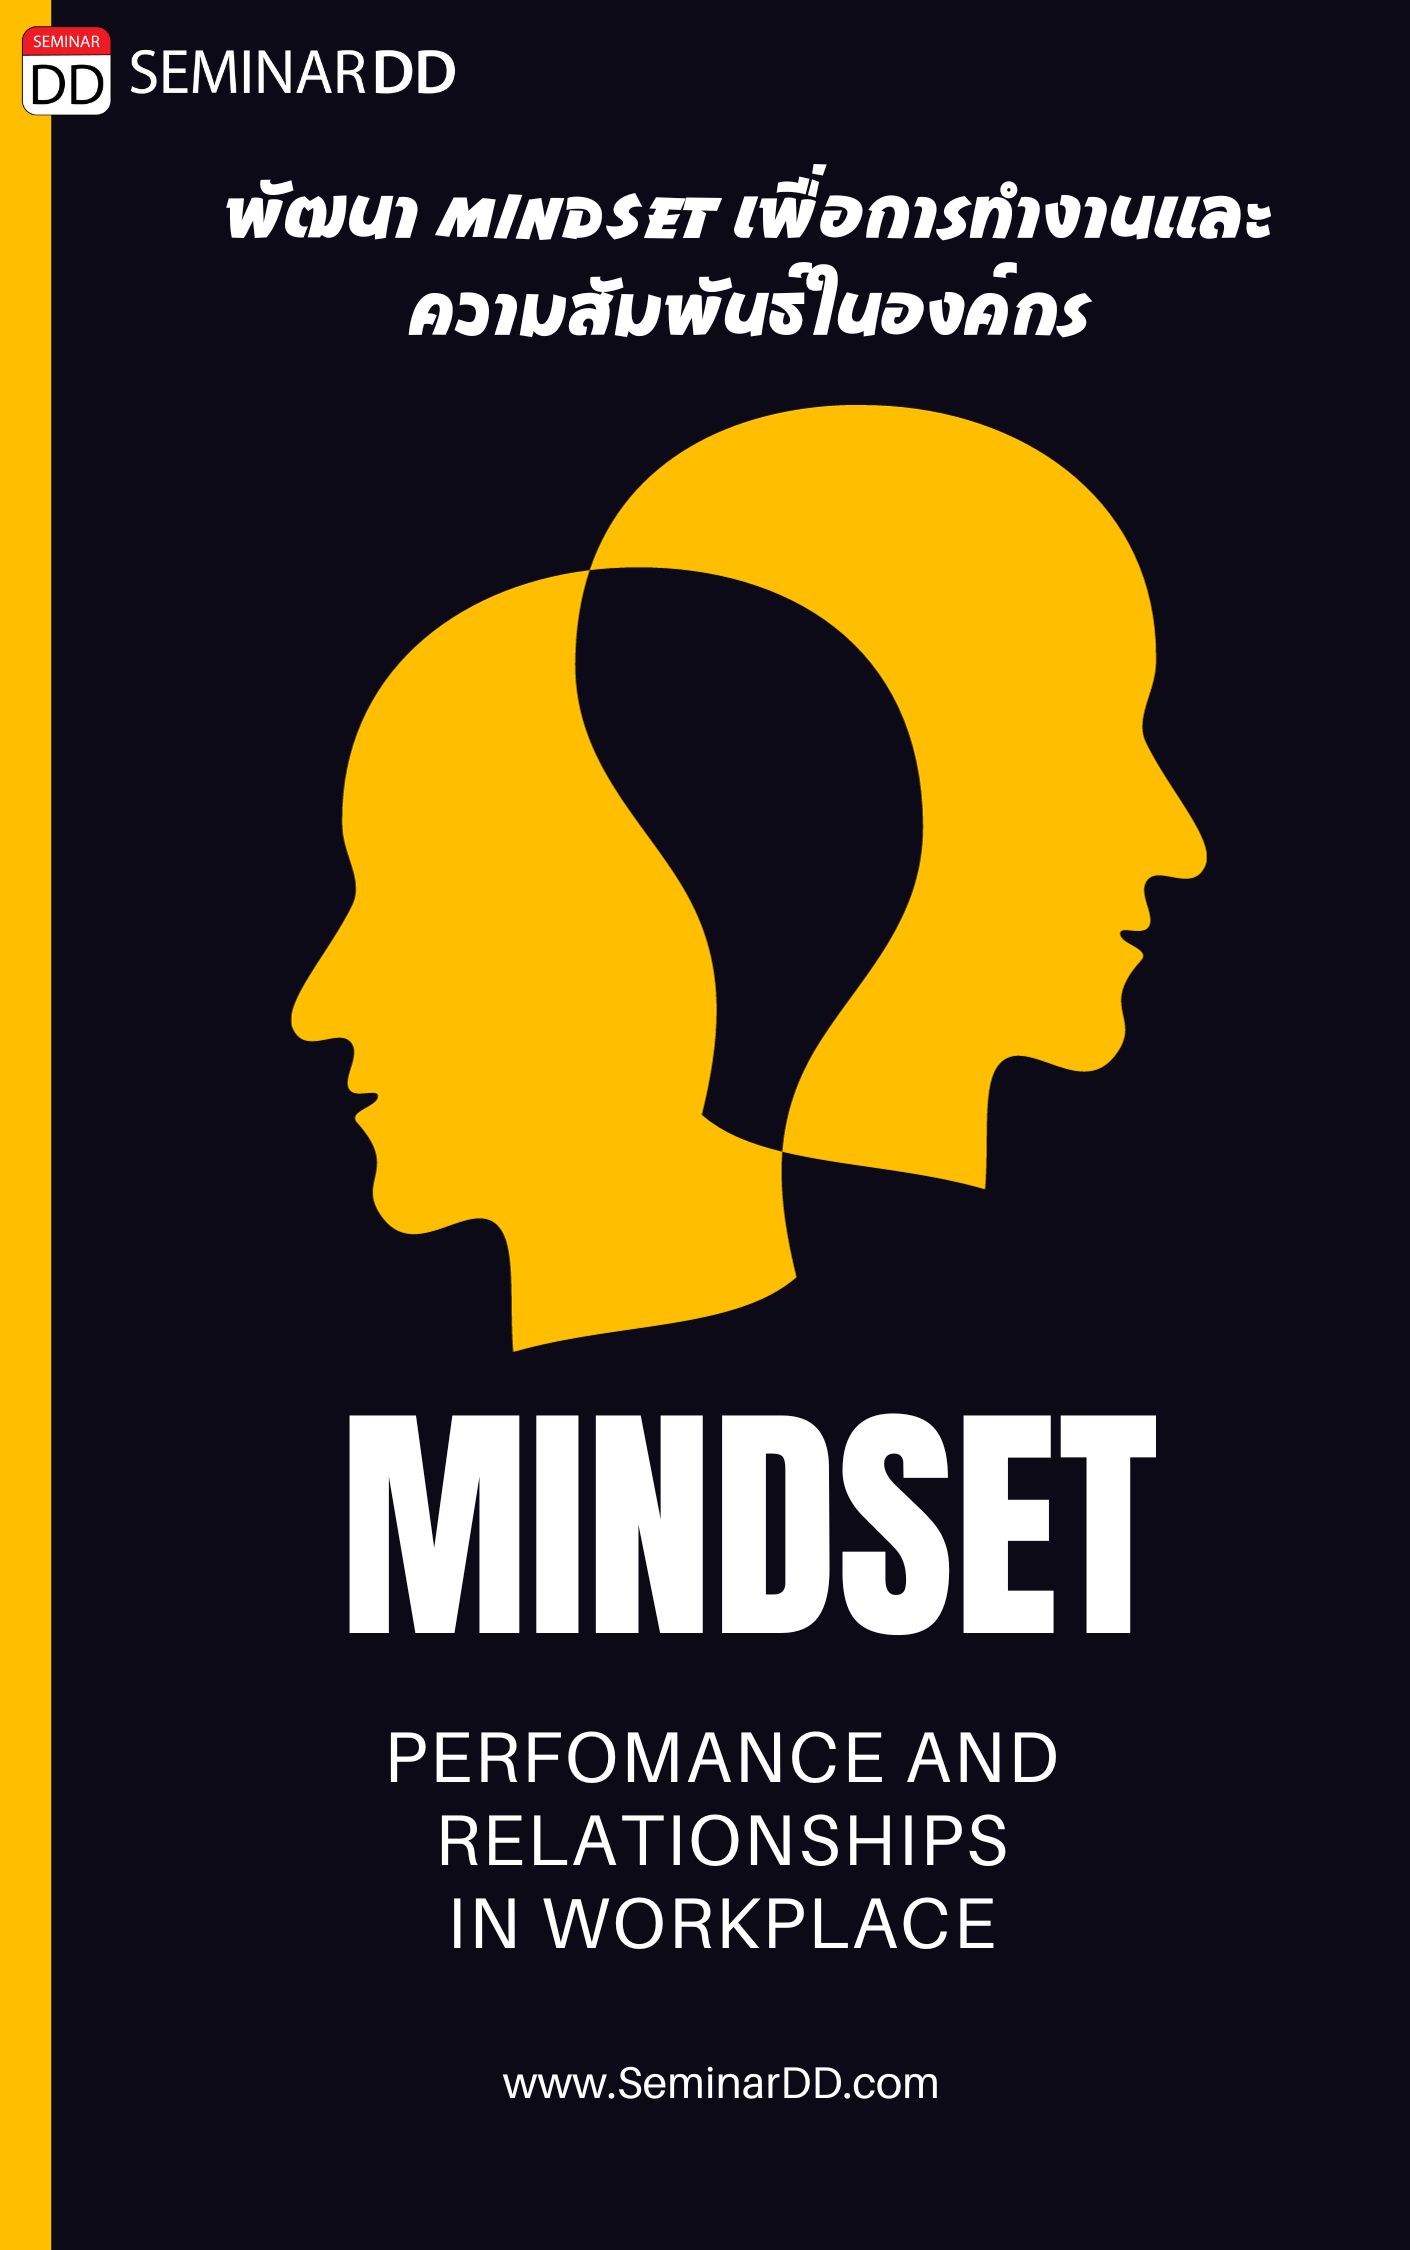 หลักสูตรอบรม การพัฒนา Mindset เพื่อการทำงานและการความสัมพันธ์ในองค์กร (Mindset for Performance and Relationships in workplace)